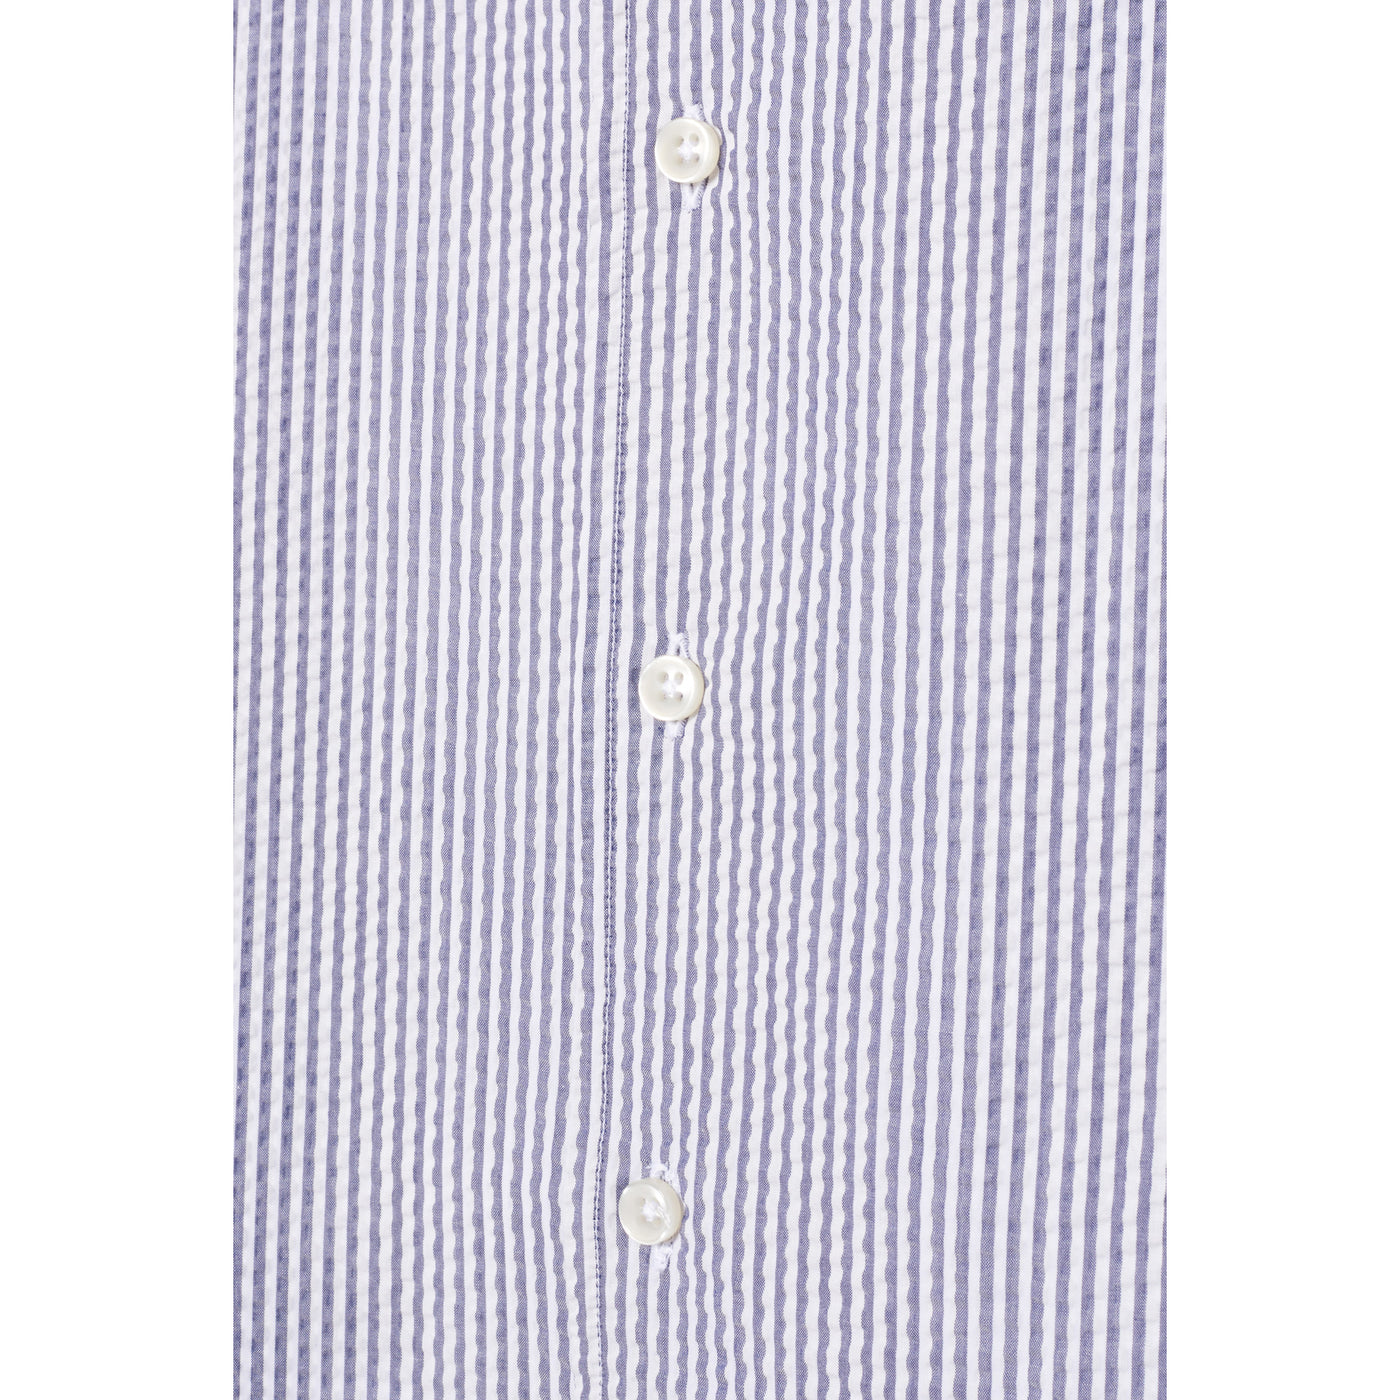 Fine Gingham Linen Short Sleeve Shirt - Navy White